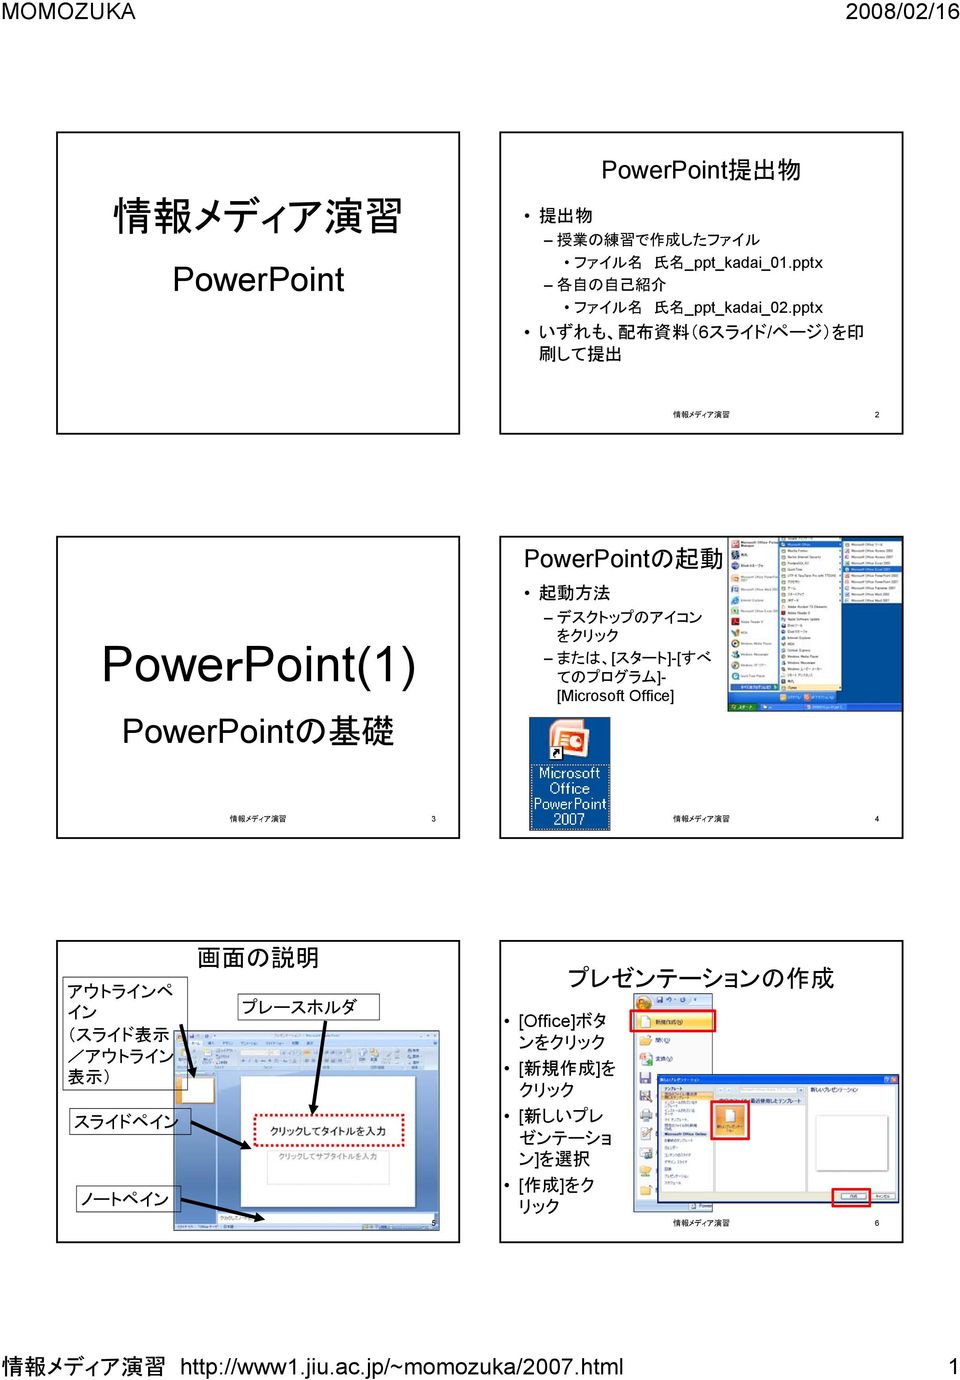 てのプログラム]- [Microsoft Office] 情 報 メディア 演 習 3 情 報 メディア 演 習 4 アウトラインペ イン (スライド 表 示 /アウトライン 表 示 ) スライドペイン ノートペイン 画 面 の 説 明 プレースホルダ 情 報 メディア 演 習 5